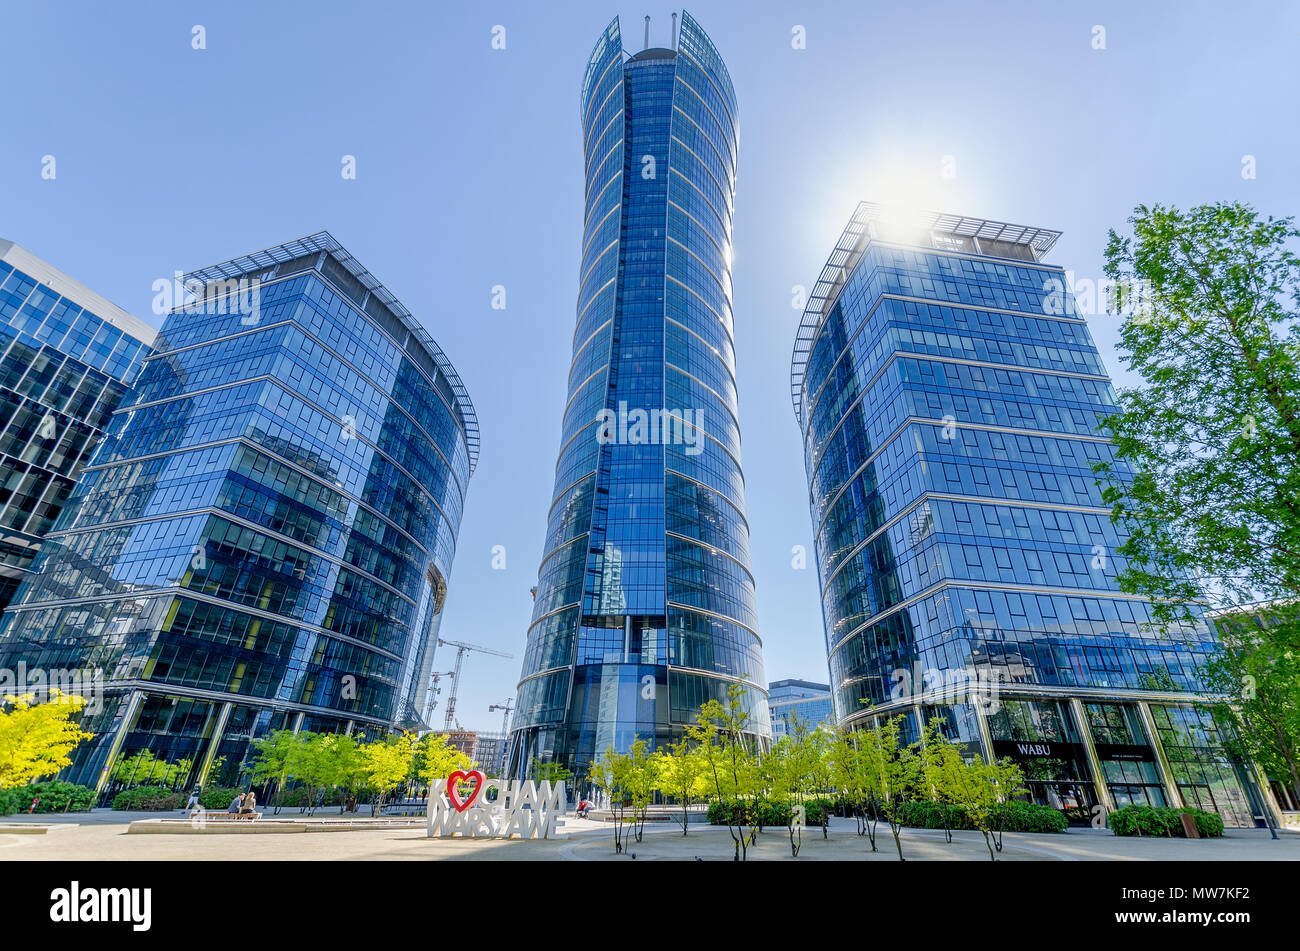 Warschau, Polen. Europäische Square und Warschau Spire, das höchste Bürogebäude in Warschau (220 m.) Stockfoto